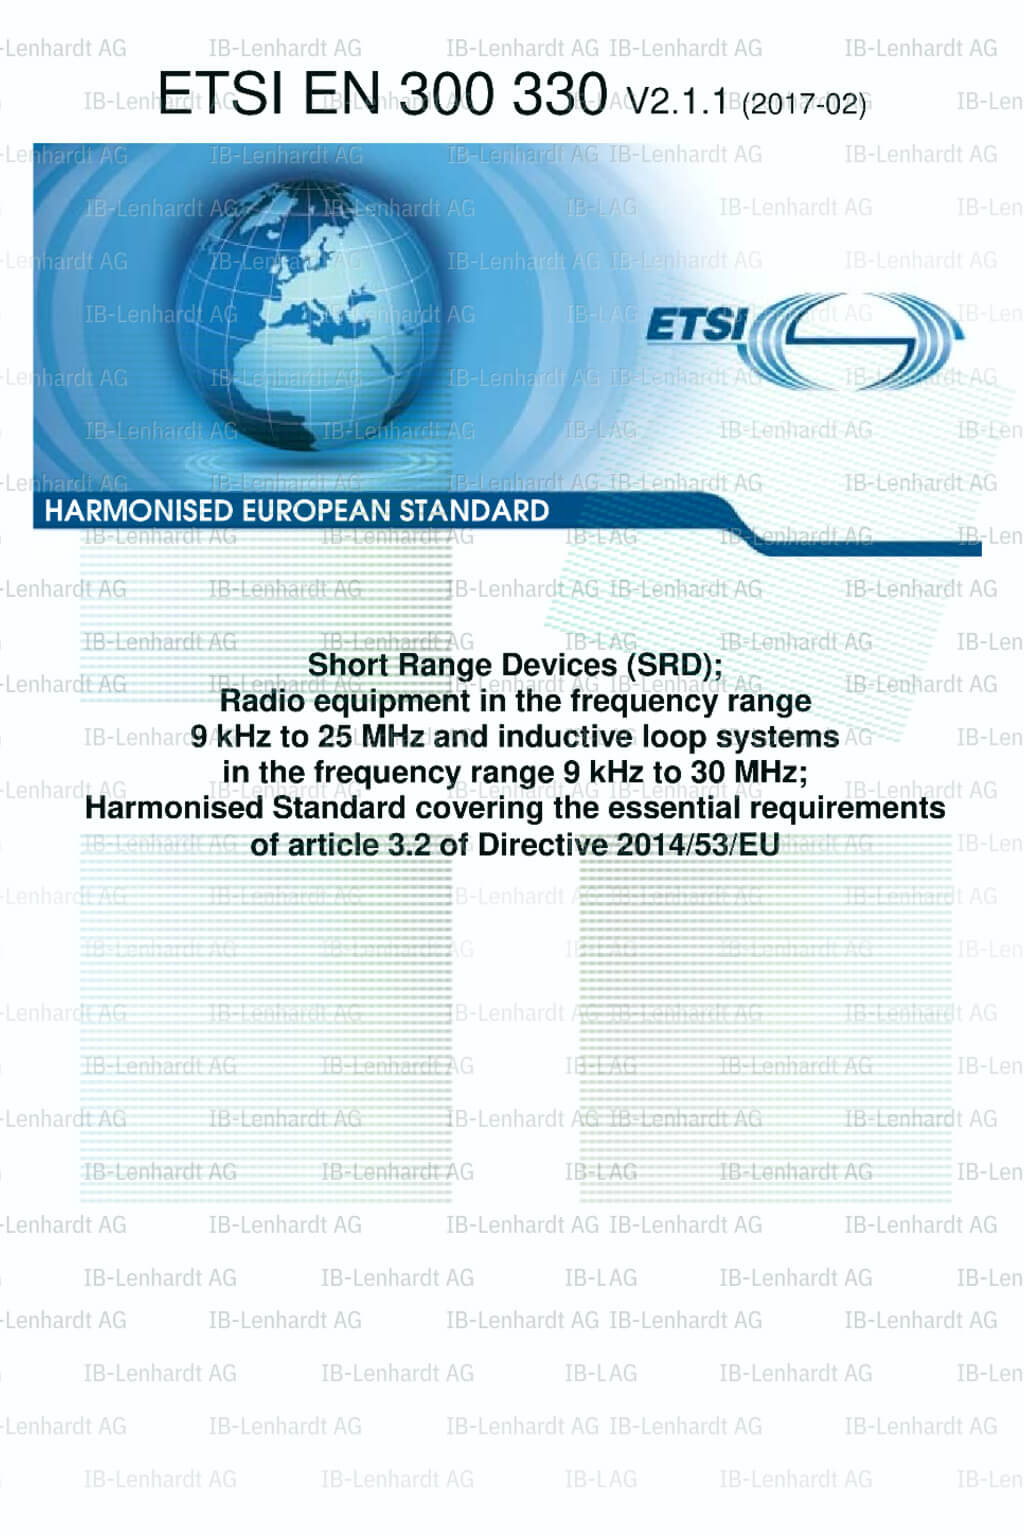 ETSI EN 300 330 V2.1.1